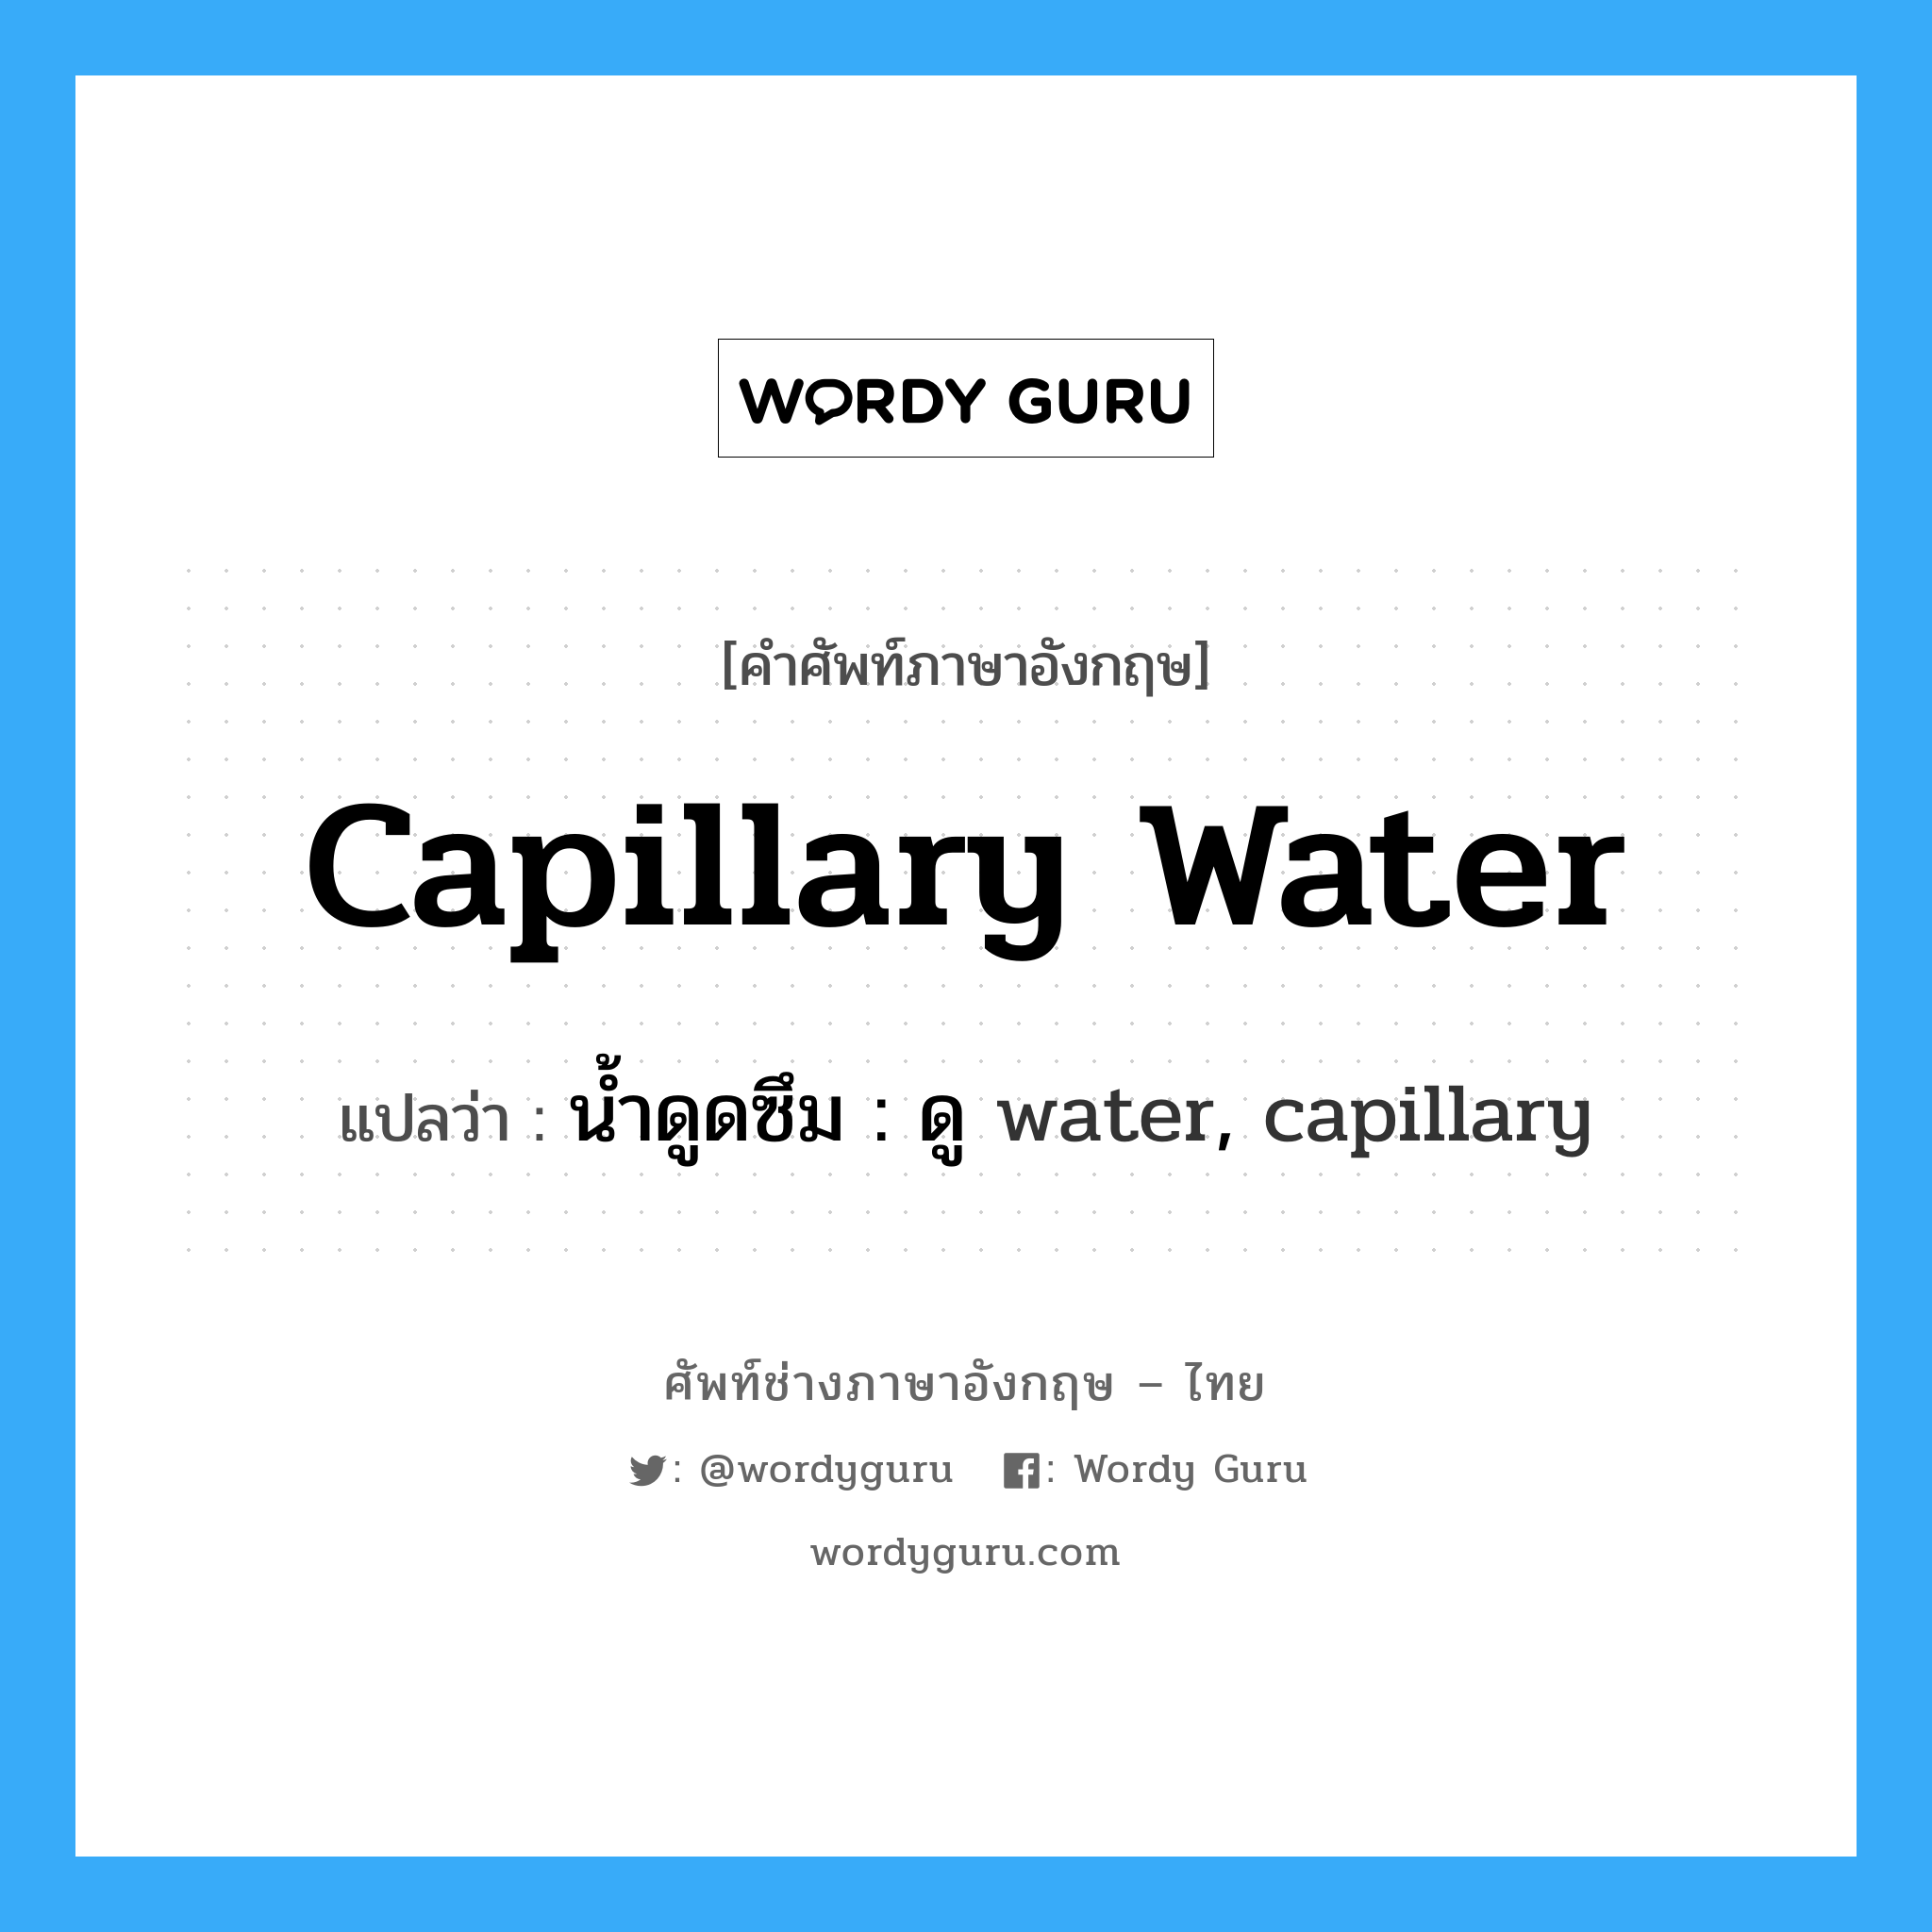 น้ำดูดซึม : ดู water, capillary ภาษาอังกฤษ?, คำศัพท์ช่างภาษาอังกฤษ - ไทย น้ำดูดซึม : ดู water, capillary คำศัพท์ภาษาอังกฤษ น้ำดูดซึม : ดู water, capillary แปลว่า capillary water